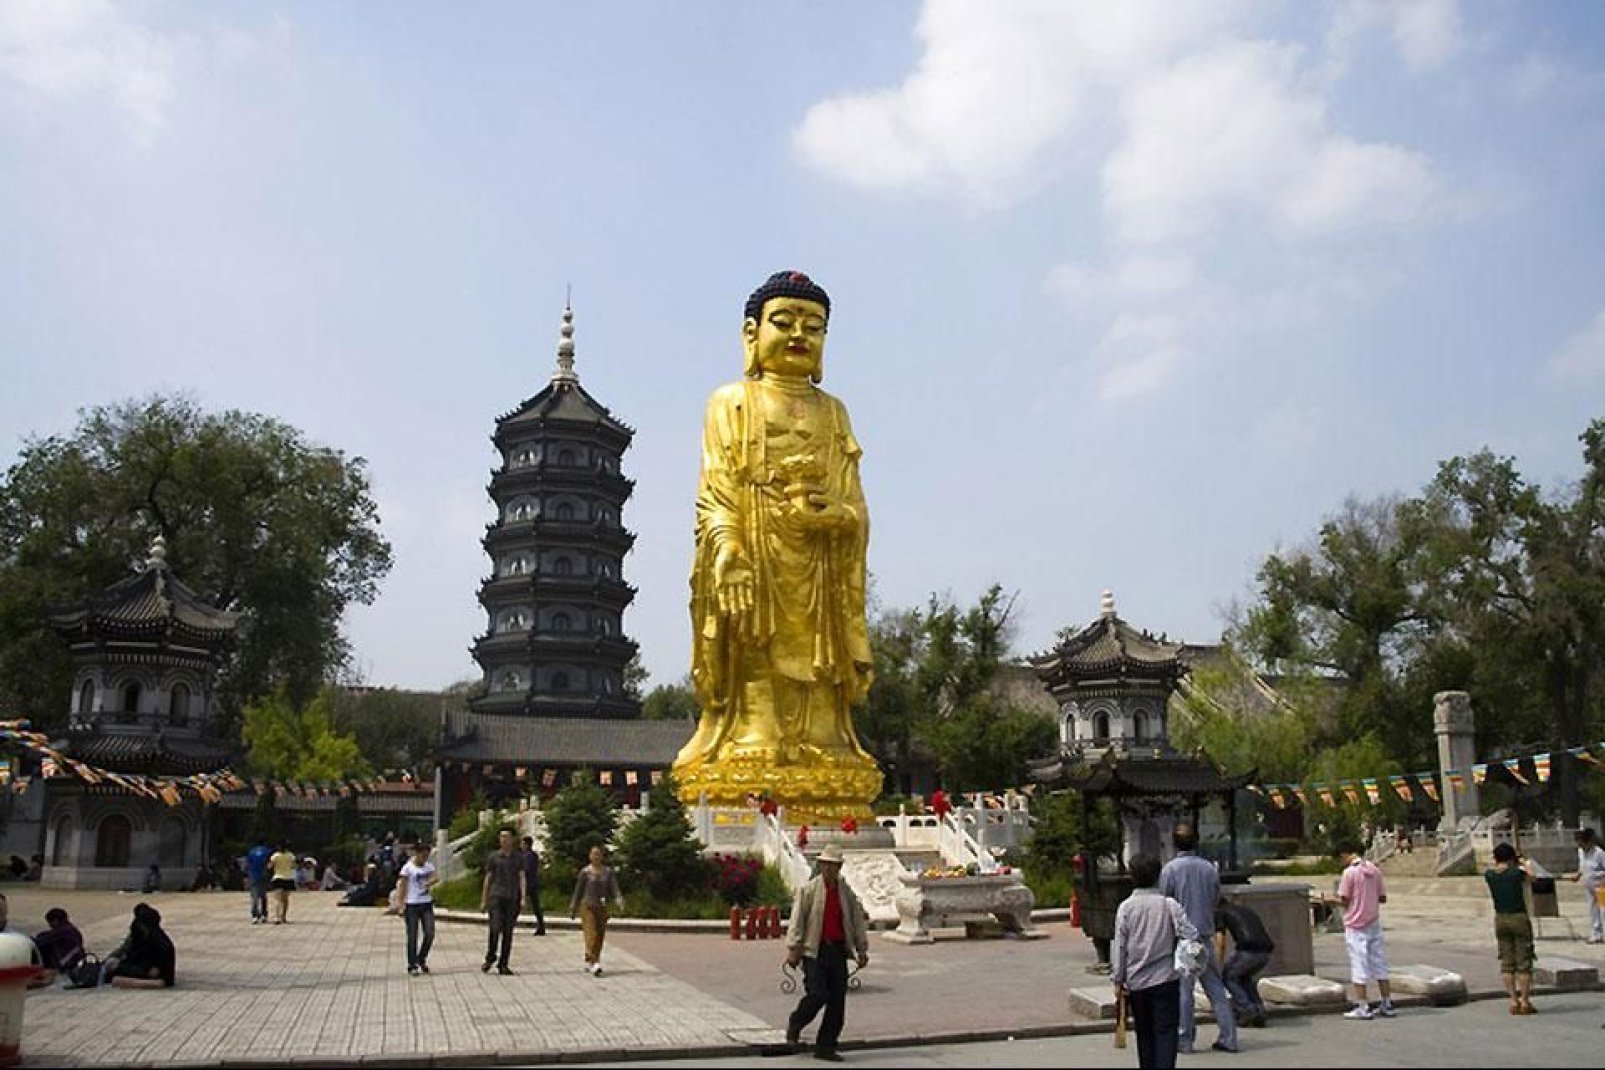 Der Guanyin-Buddha, ein weibliches 'Erleuchtungswesen des Mitgefühls' und im Volksglauben auch als Göttin verehrt, steht vor dem Kek Lok Si Temple in Harbin.